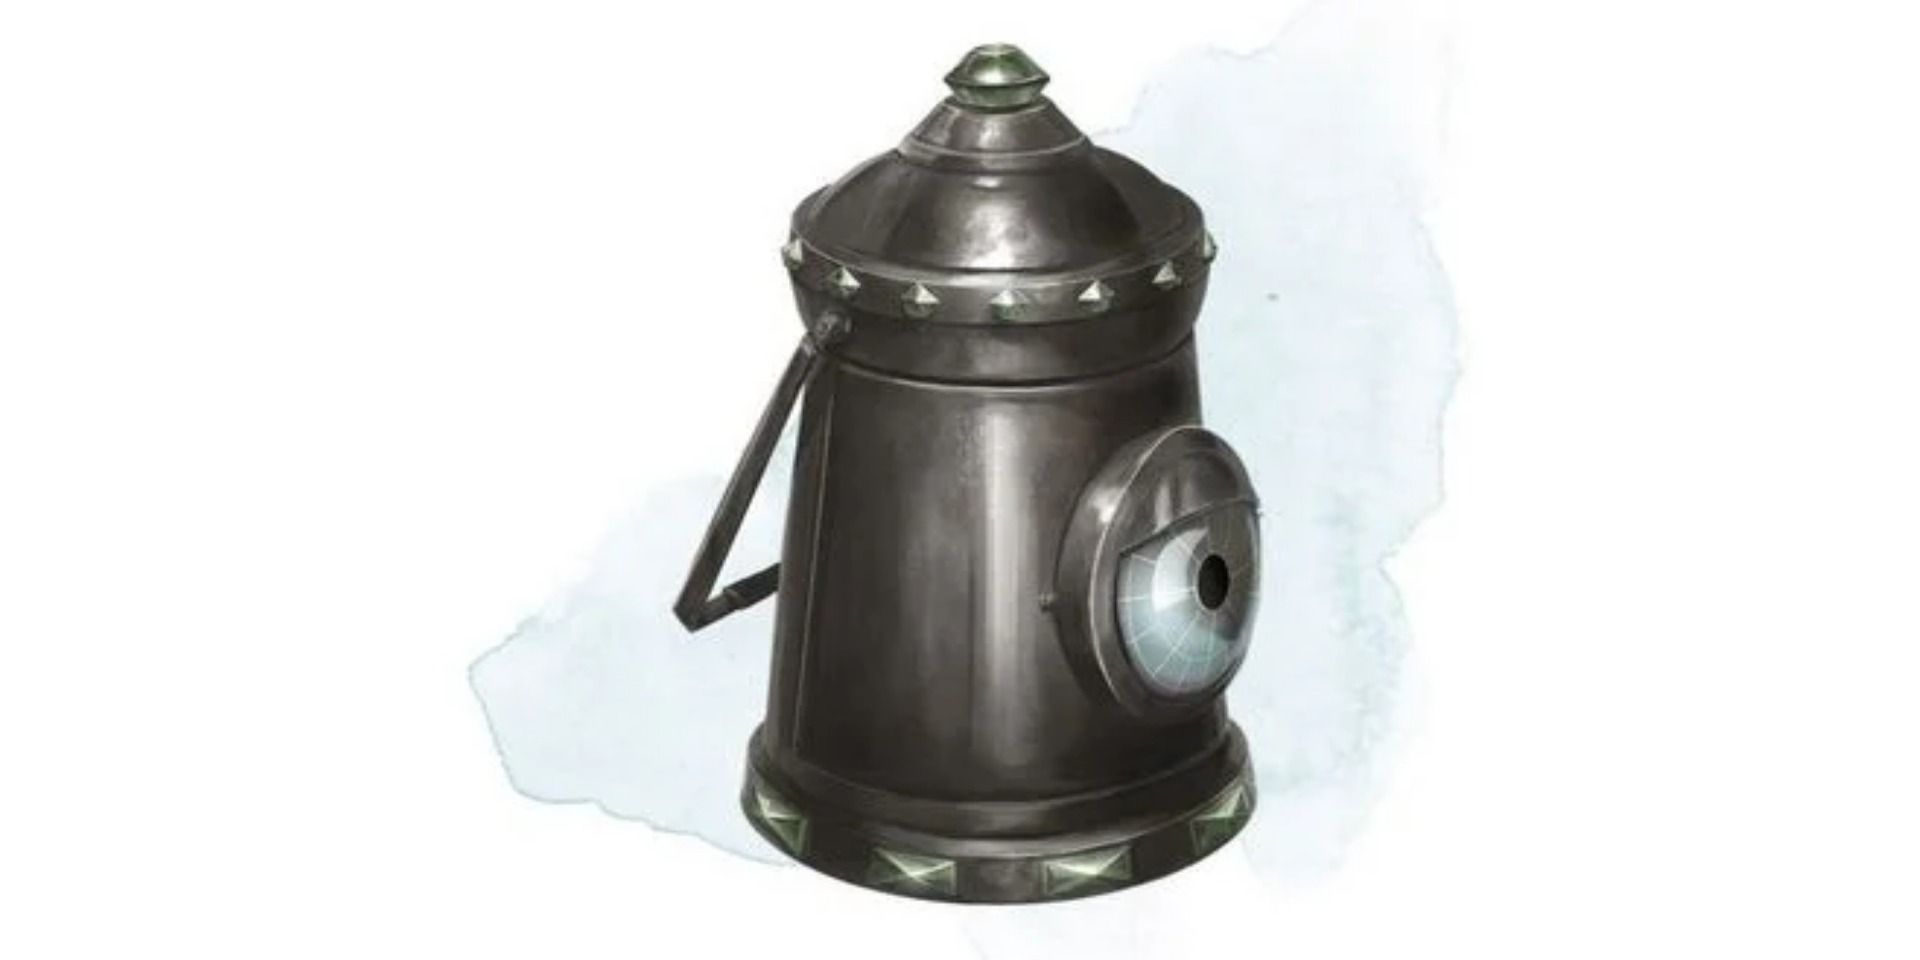 Dungeons & Dragons Lantern of Tracking magic item